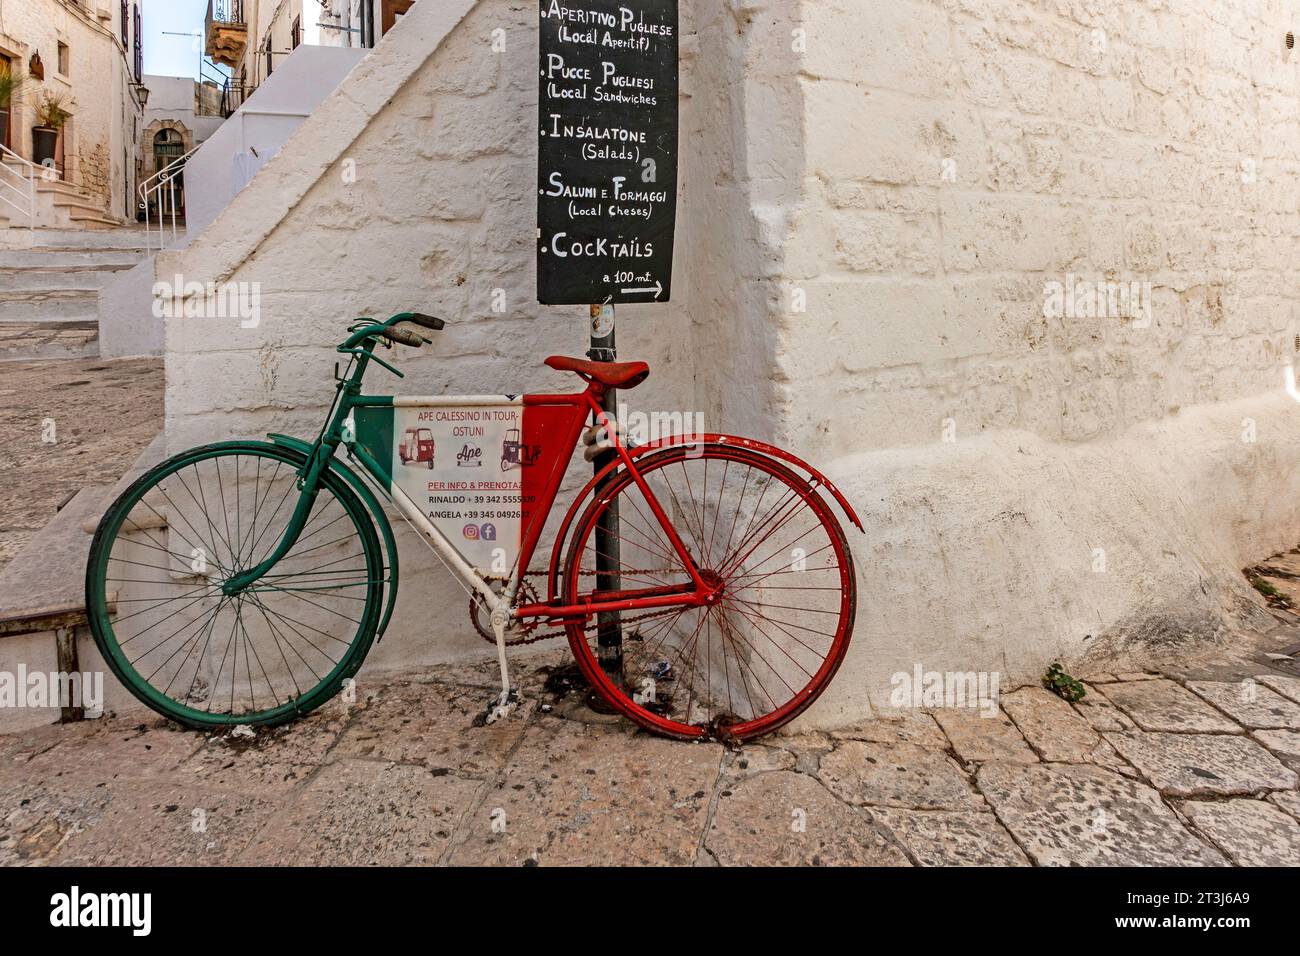 Una scena colorata a Ostuni, Italia, una bicicletta con un cartello per i tour a motore di TucTuc sotto un cartello per un caffè locale. Foto Stock